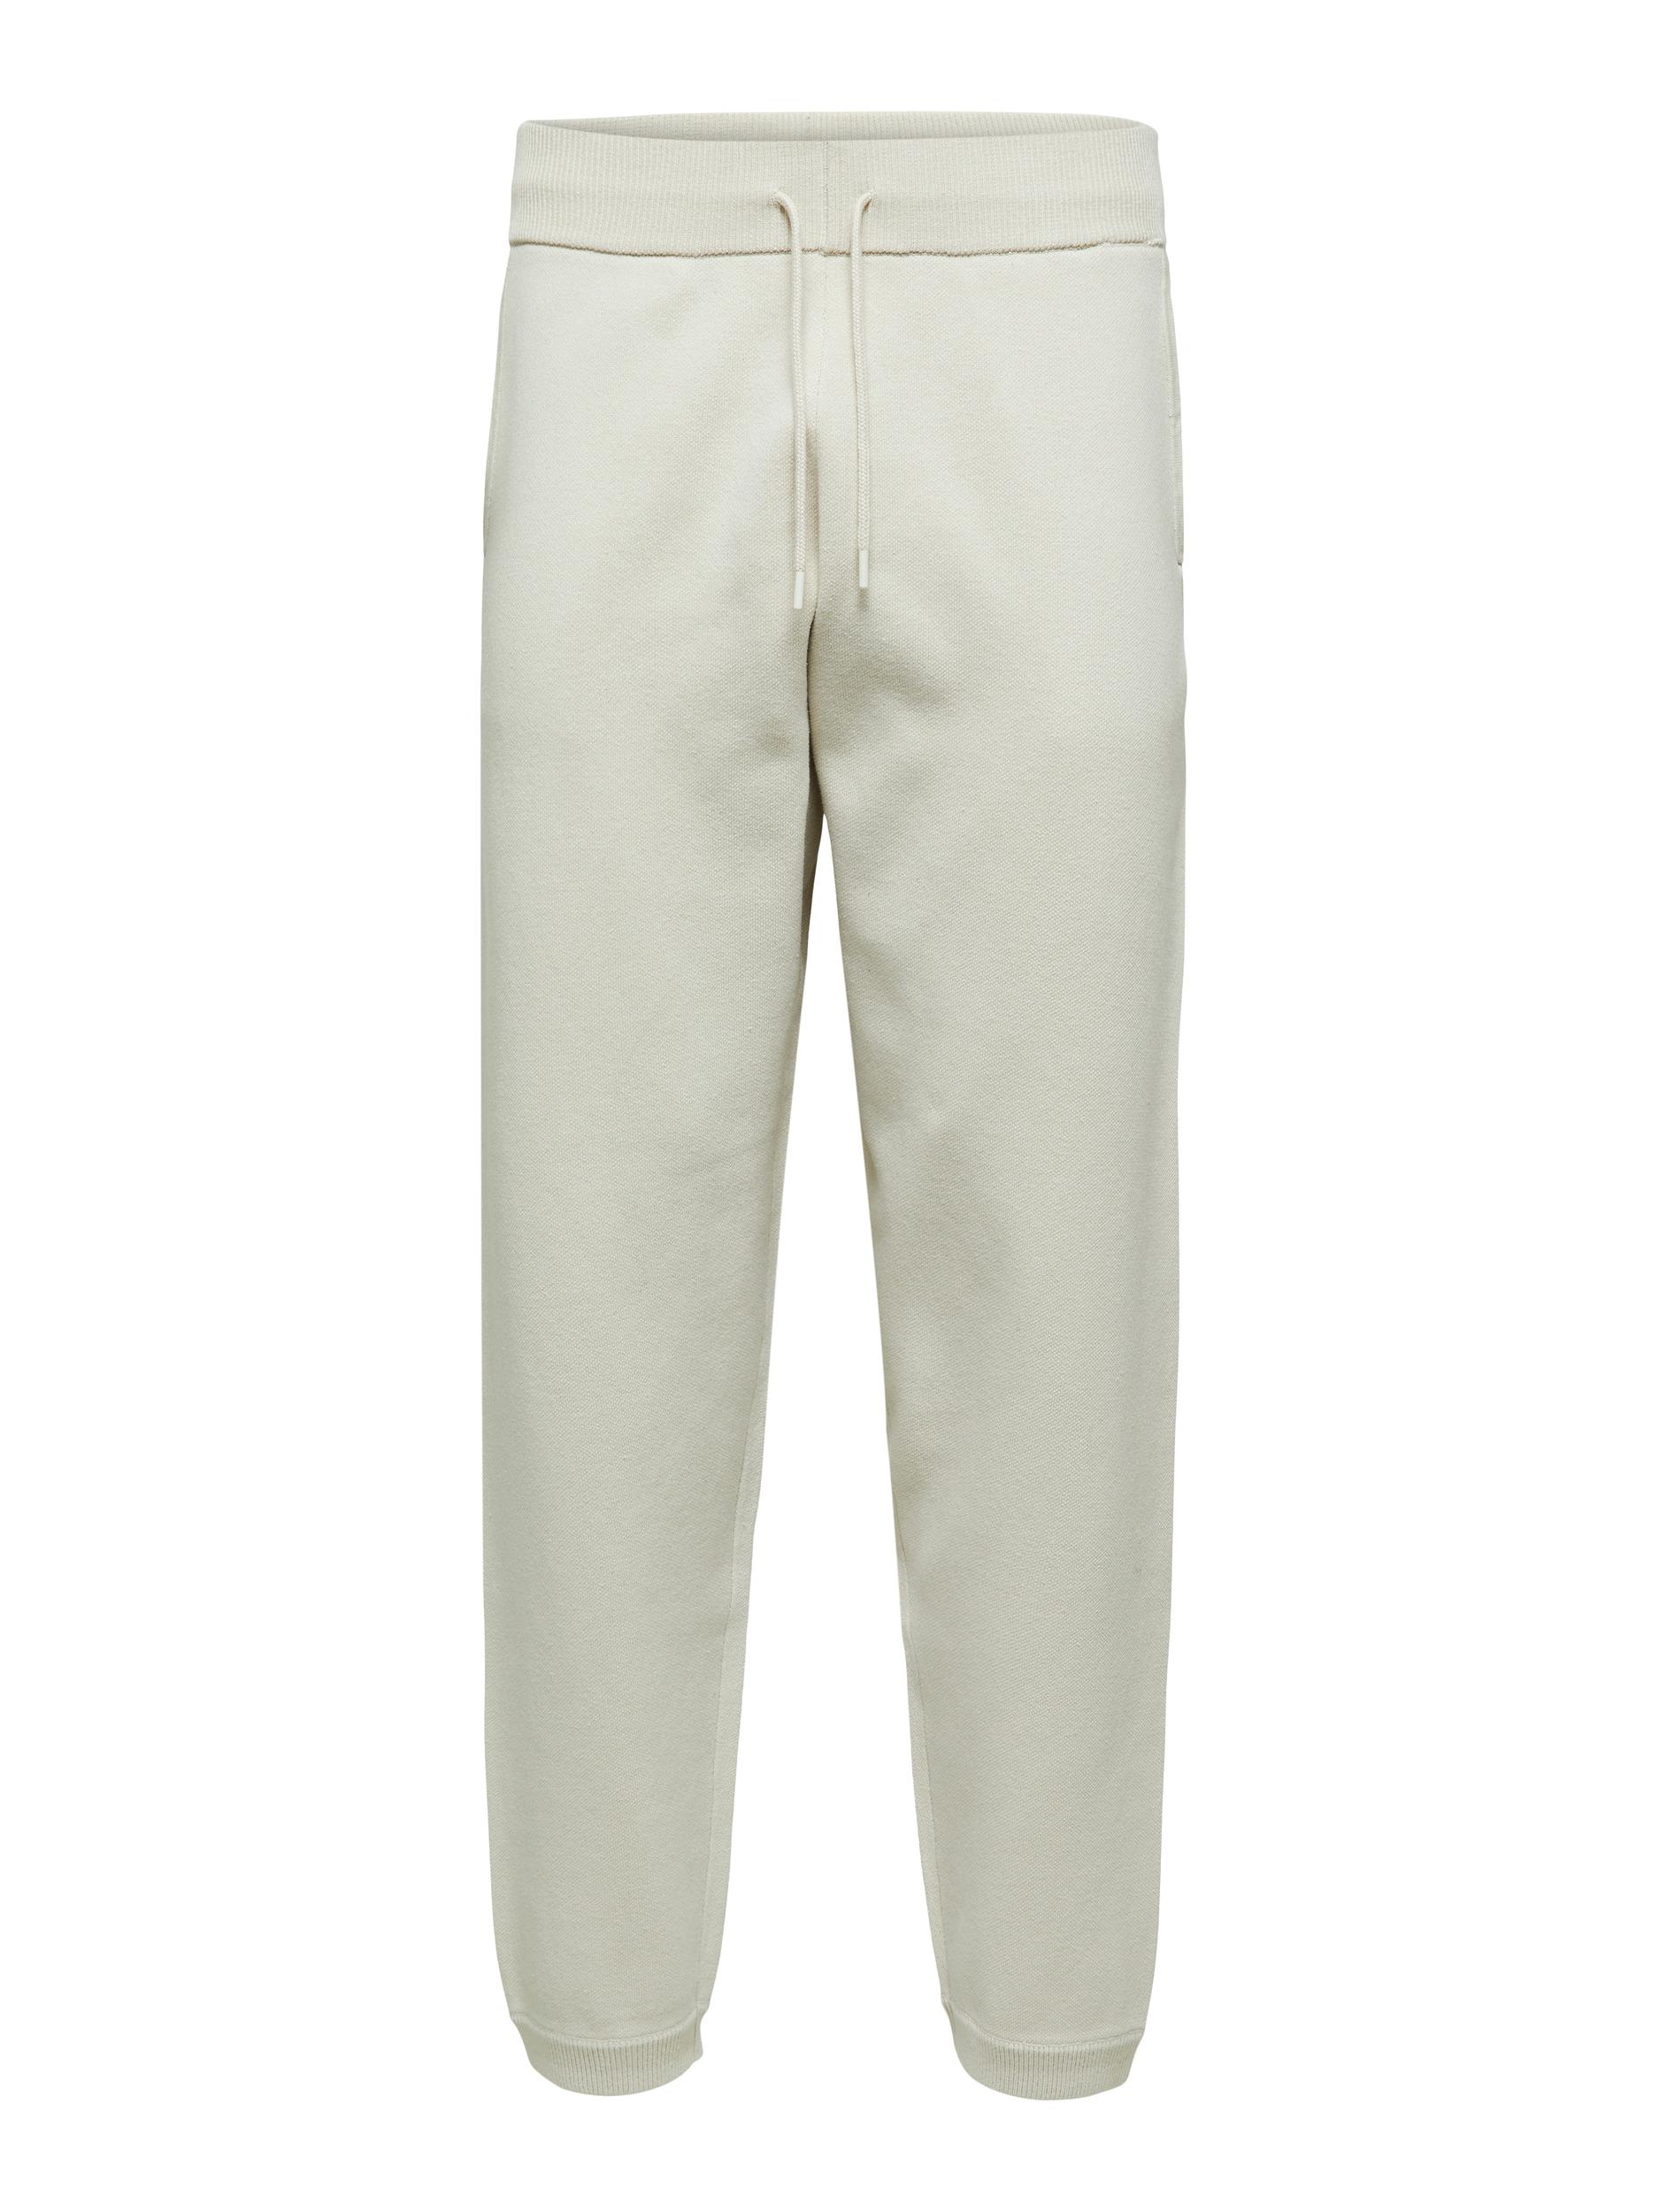 Bluzy Odzież SELECTED HOMME Spodnie Nio w kolorze Kremowym 